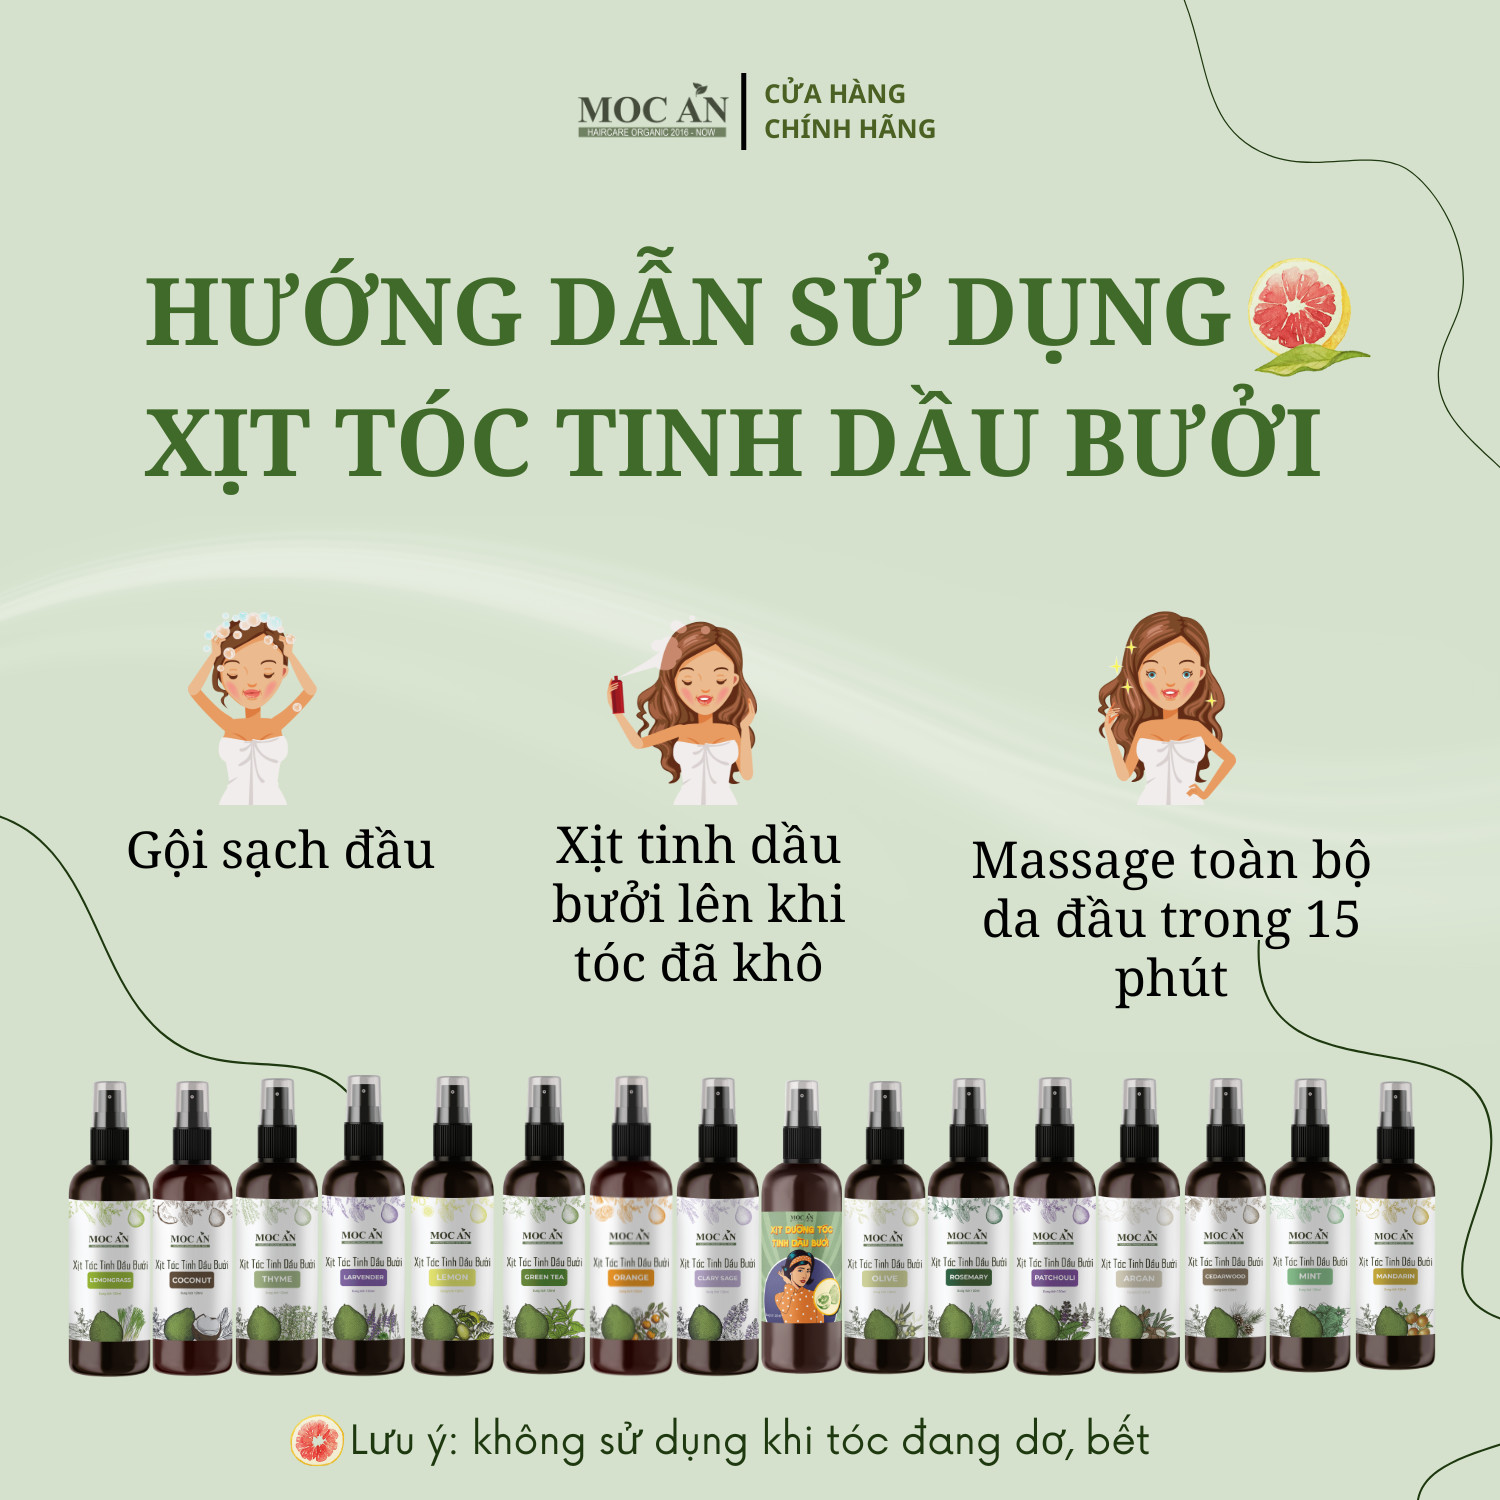 Xịt Kích Mọc Tóc Tinh Dầu Bưởi Dừa Non ( Coconut ) 120ml Mộc Ân Haircare hỗ trợ giảm rụng, giảm mảng bám gàu trên da đầu